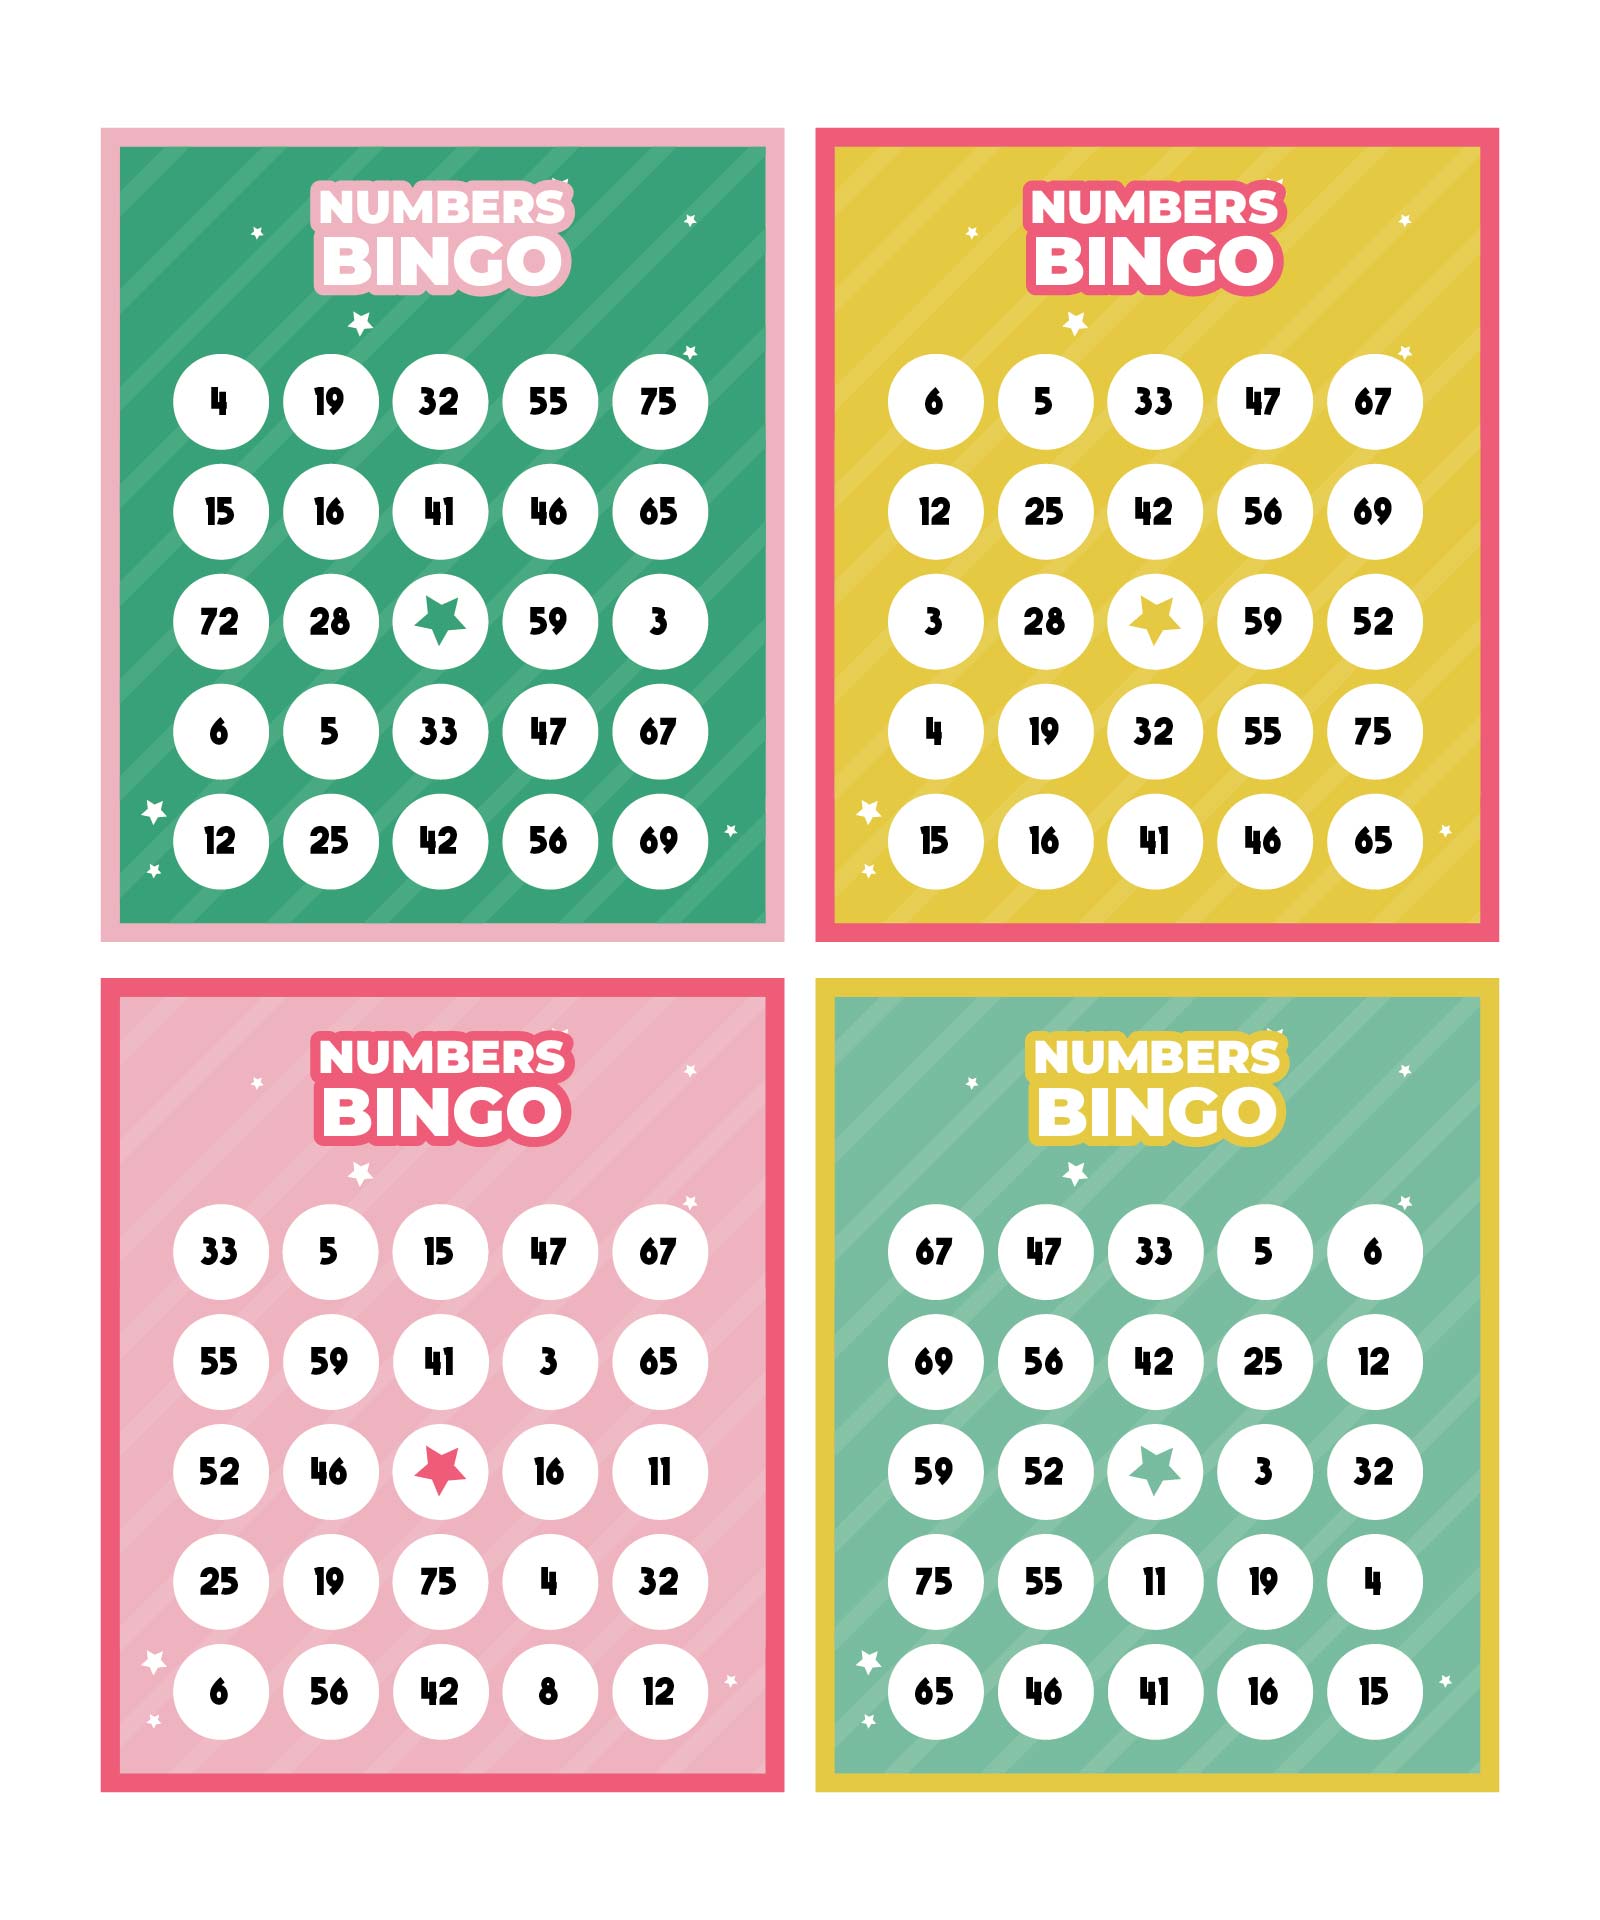 5 Best Images of Free Printable Number Bingo Cards - Printable Bingo ...